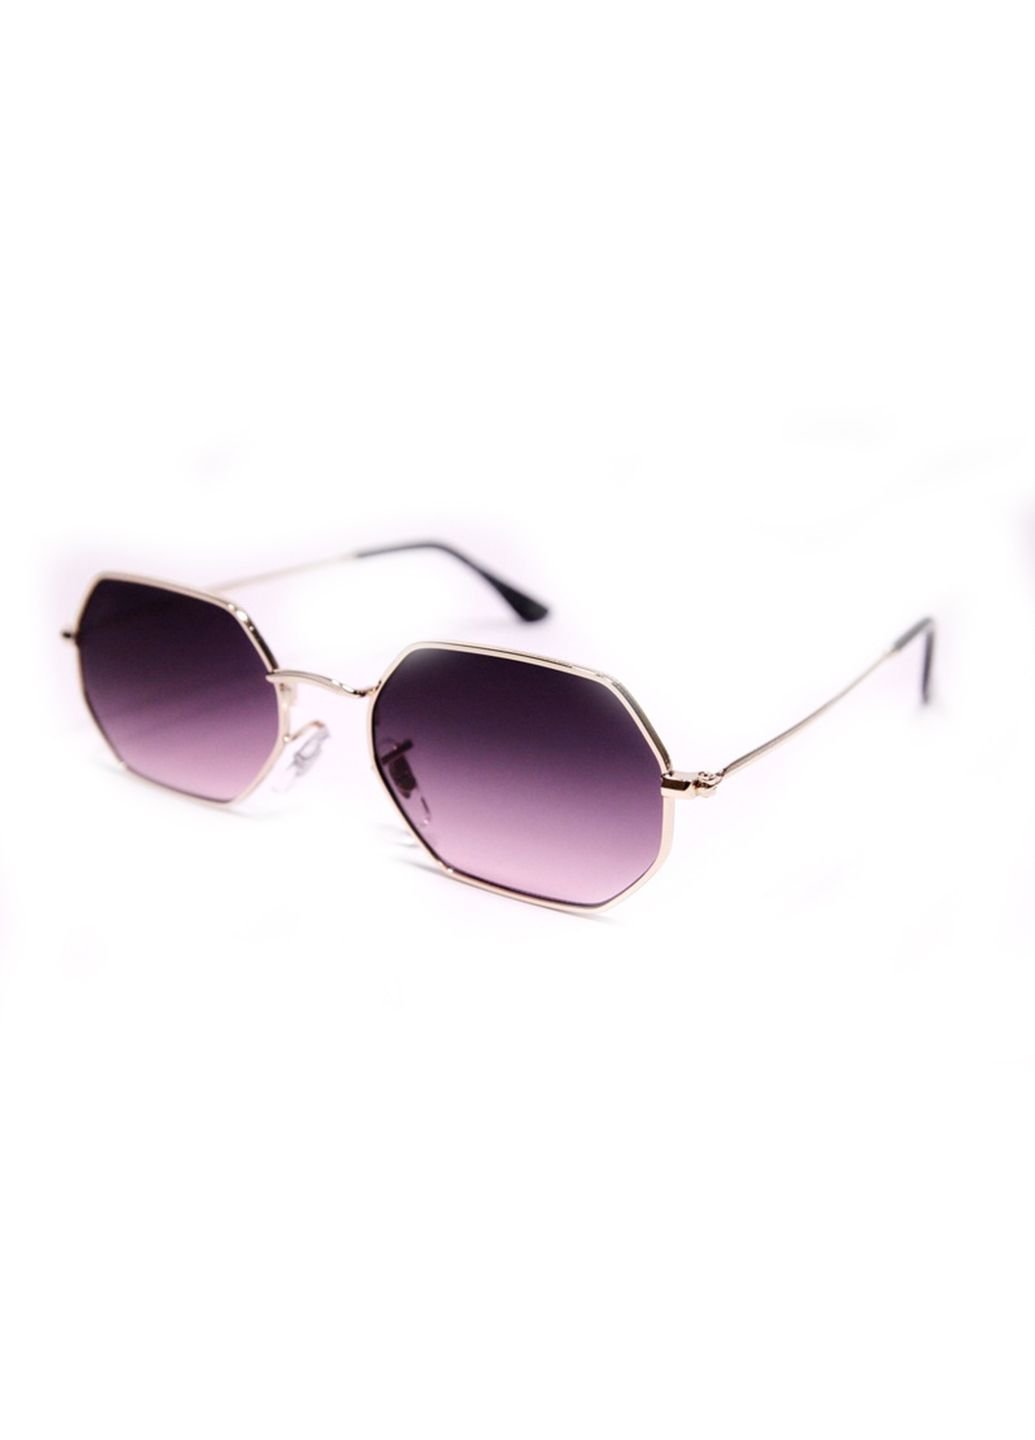 Купить Женские солнцезащитные очки Merlini RB3556 100292 - Фиолетовый в интернет-магазине